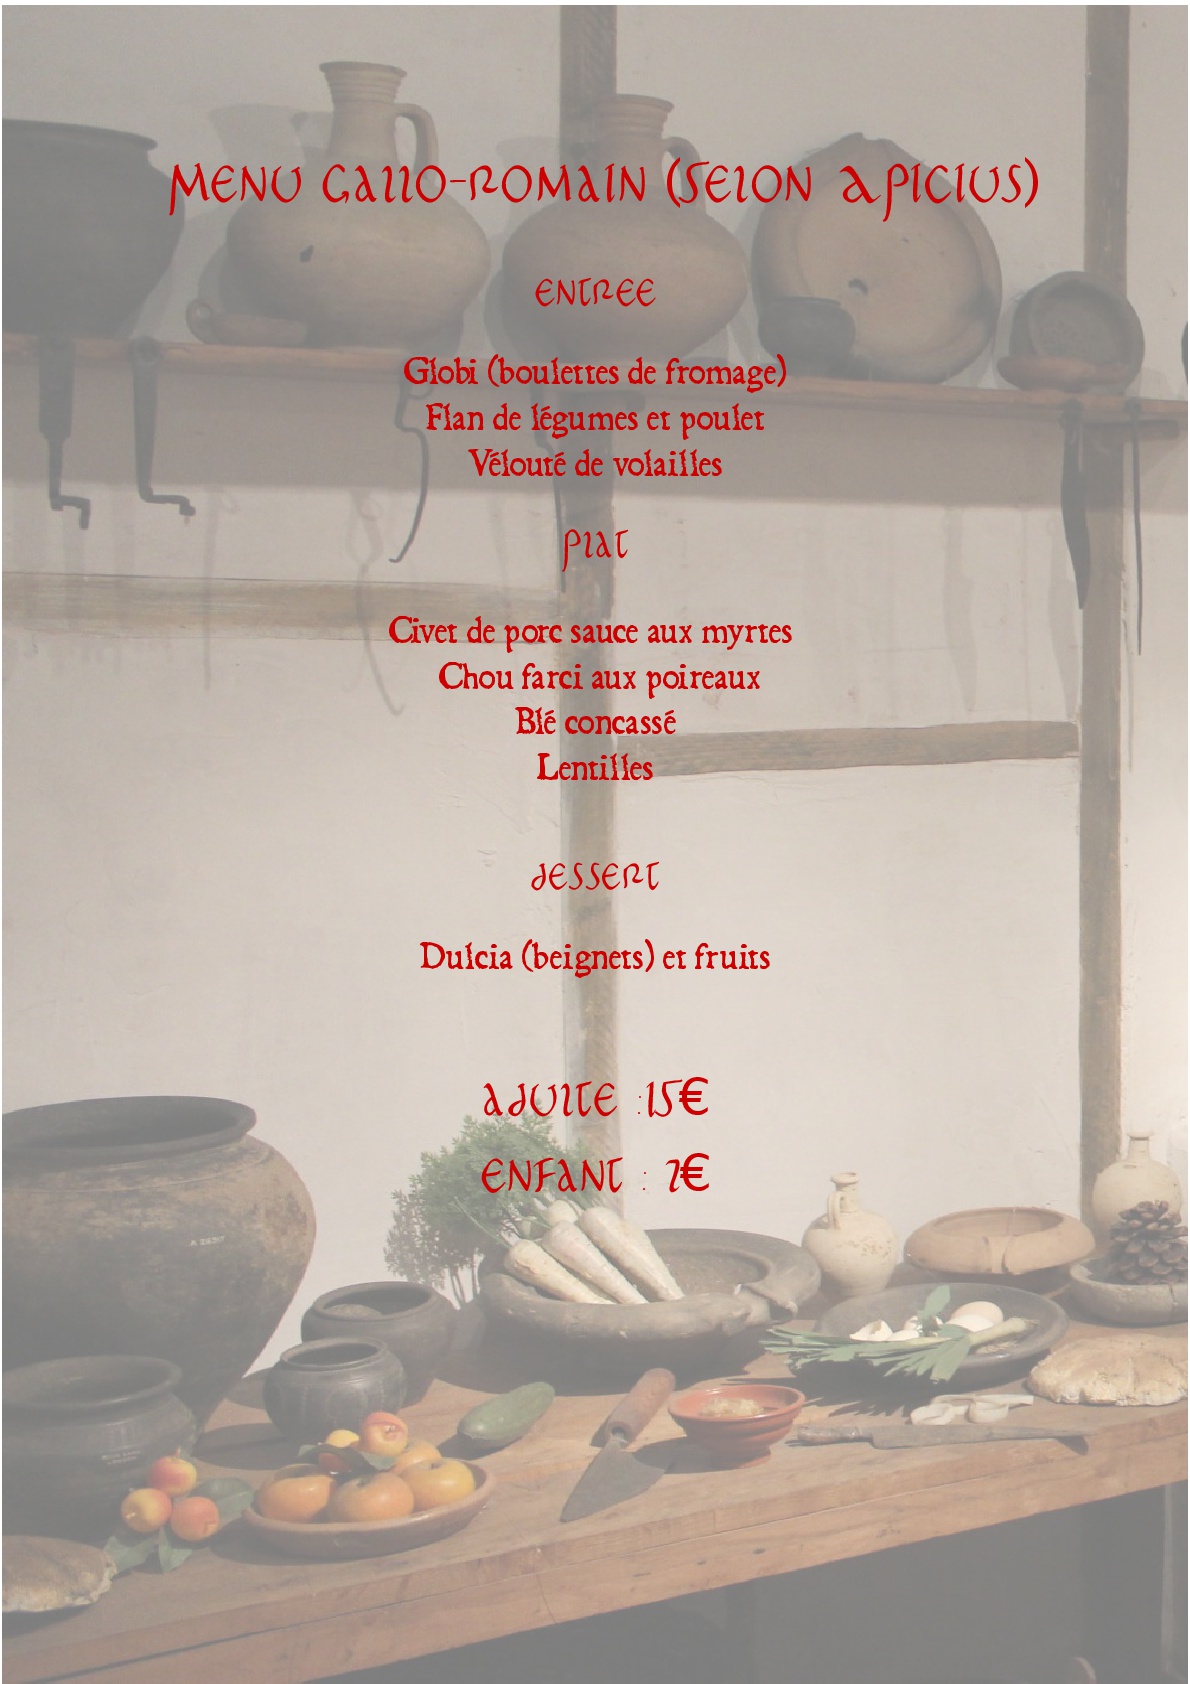 menu romain 001